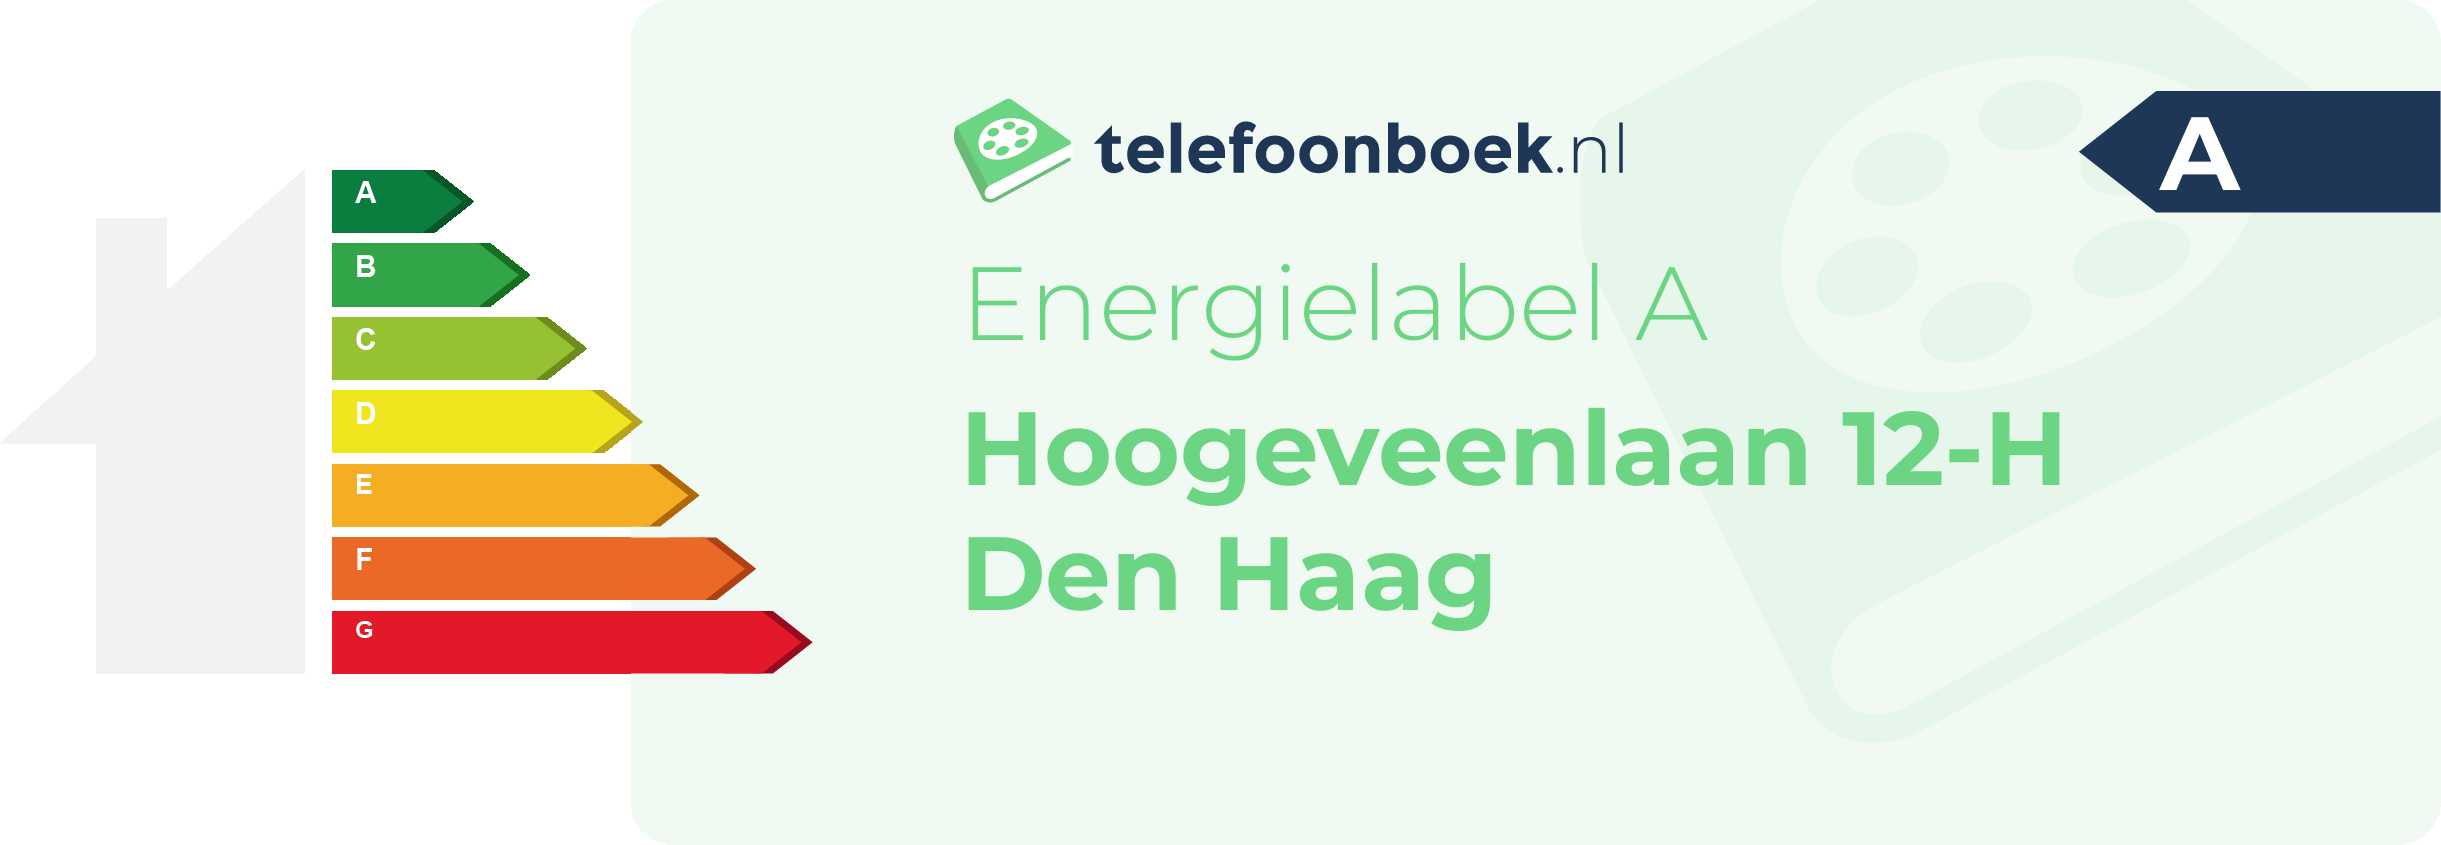 Energielabel Hoogeveenlaan 12-H Den Haag